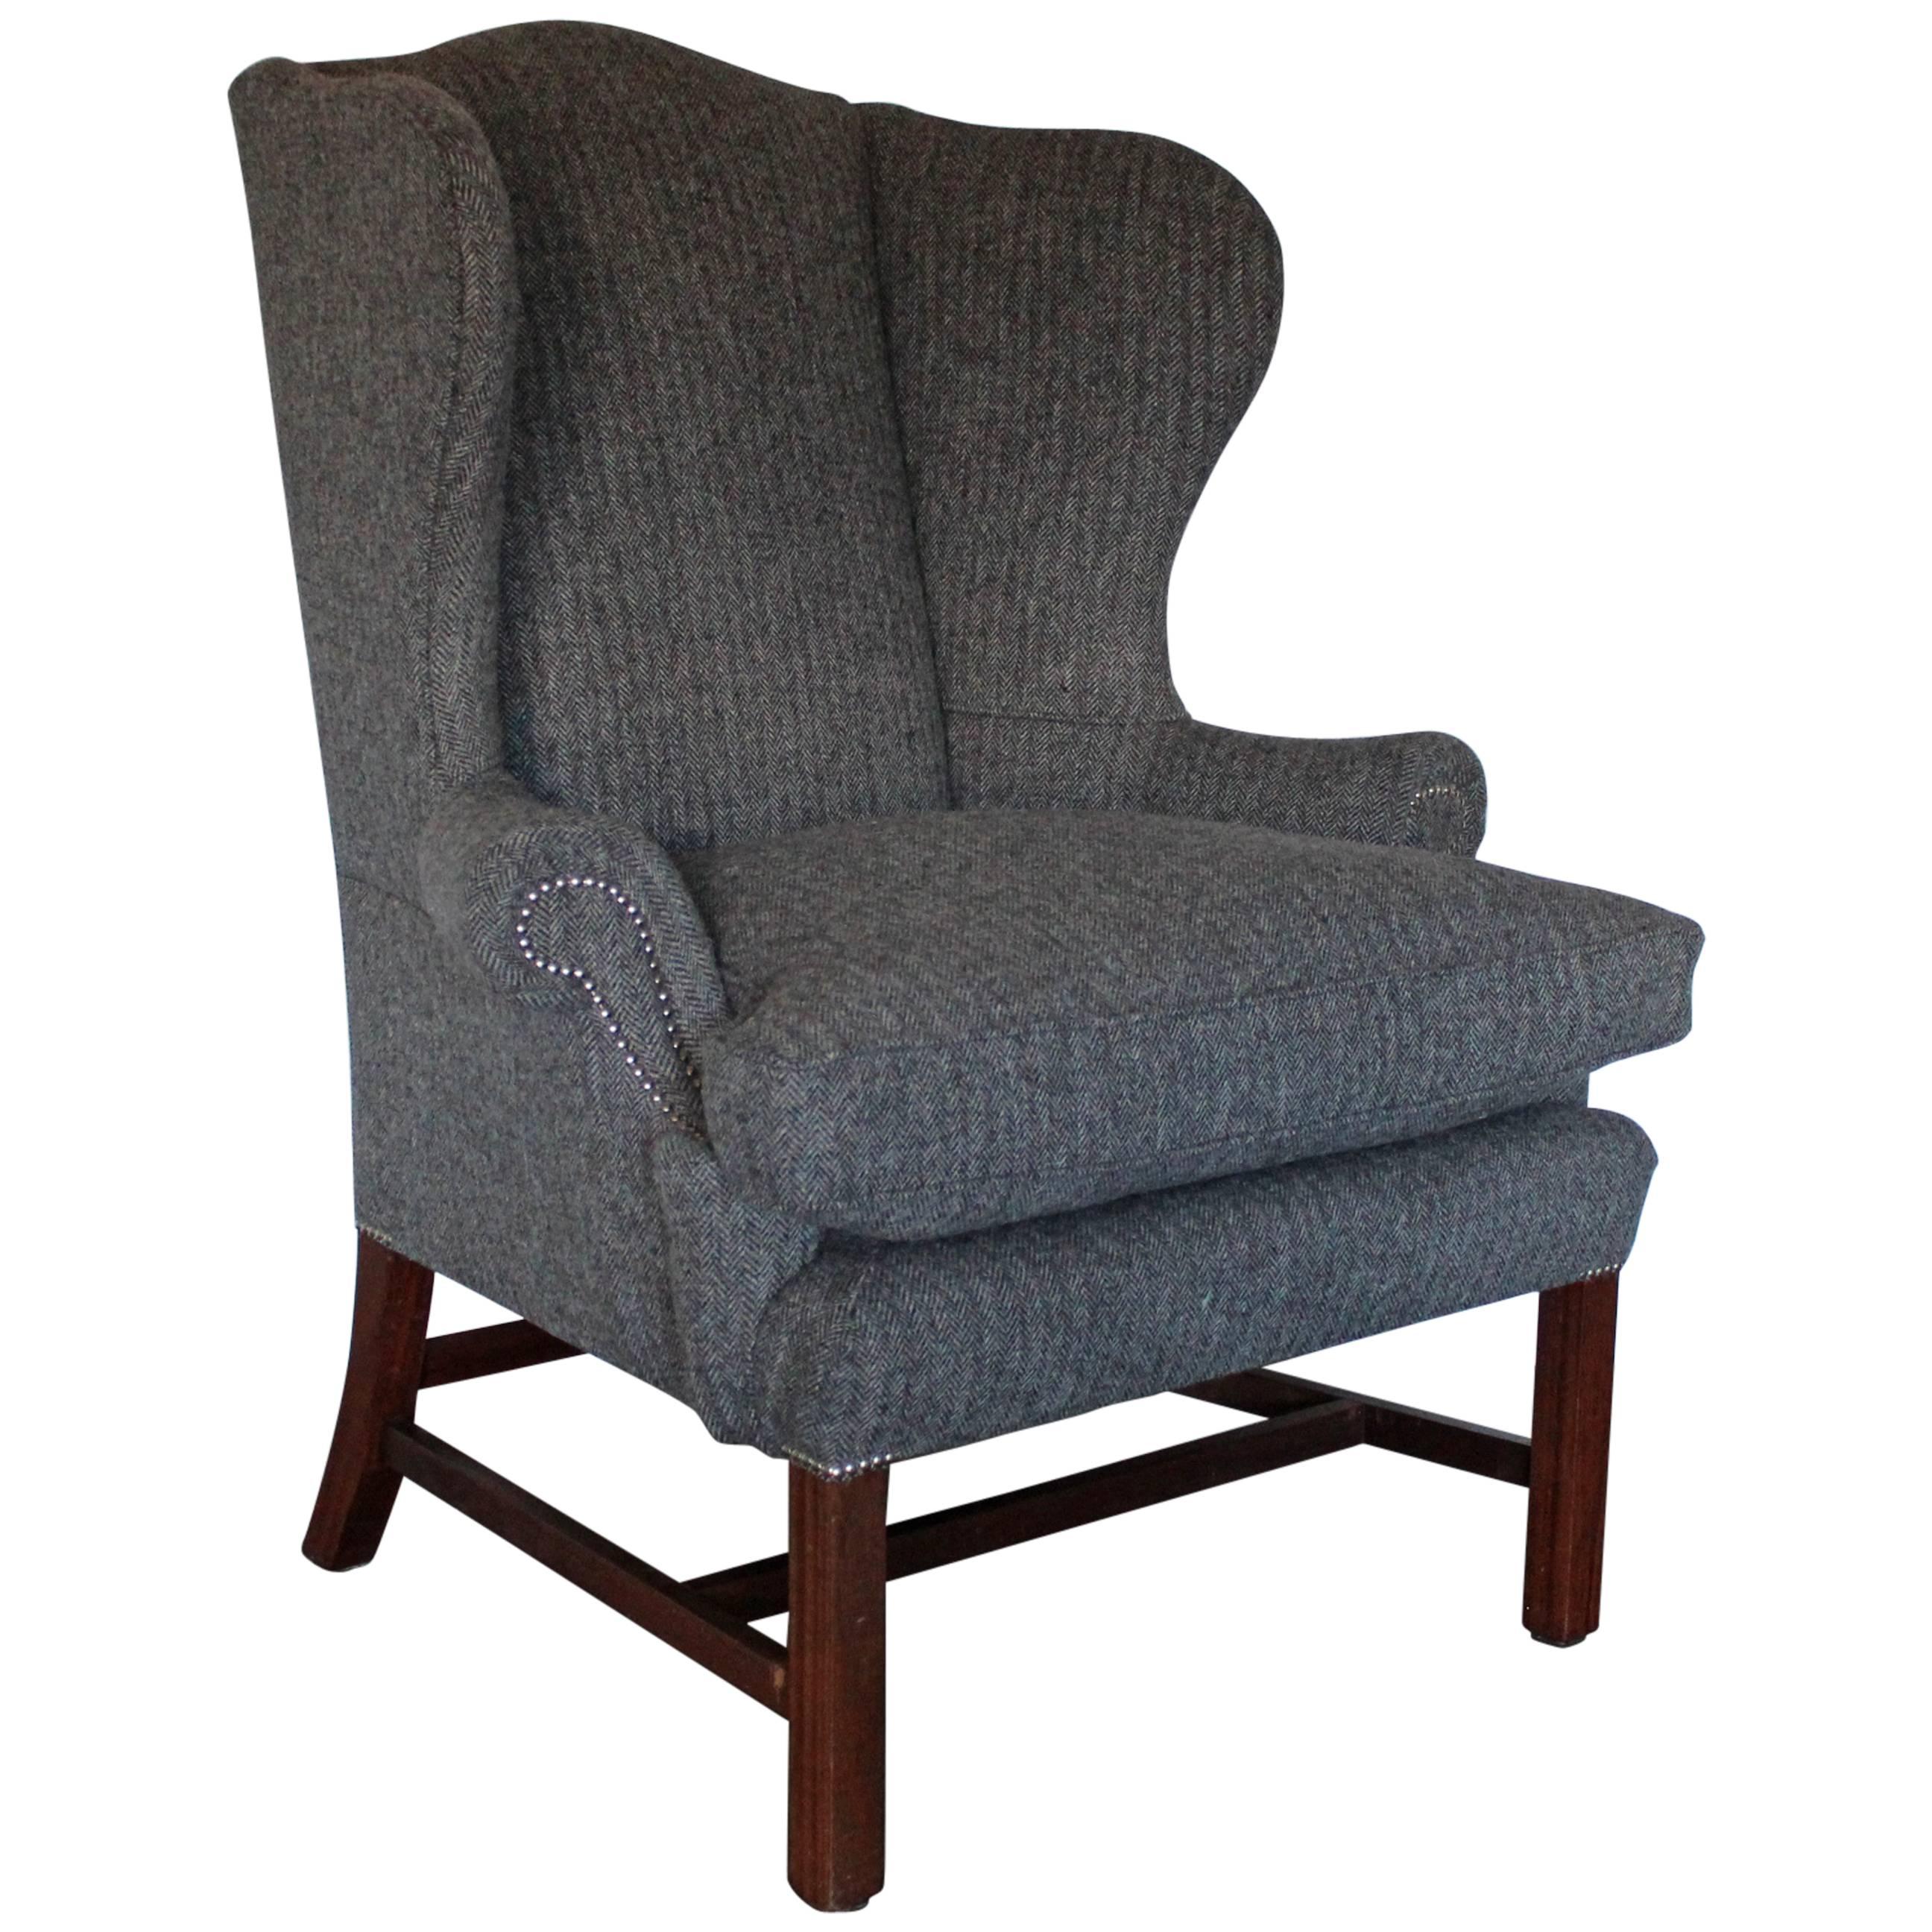 Ralph Lauren “Devonshire” Wingback Armchair in Grey Woollen Herringbone Fabric